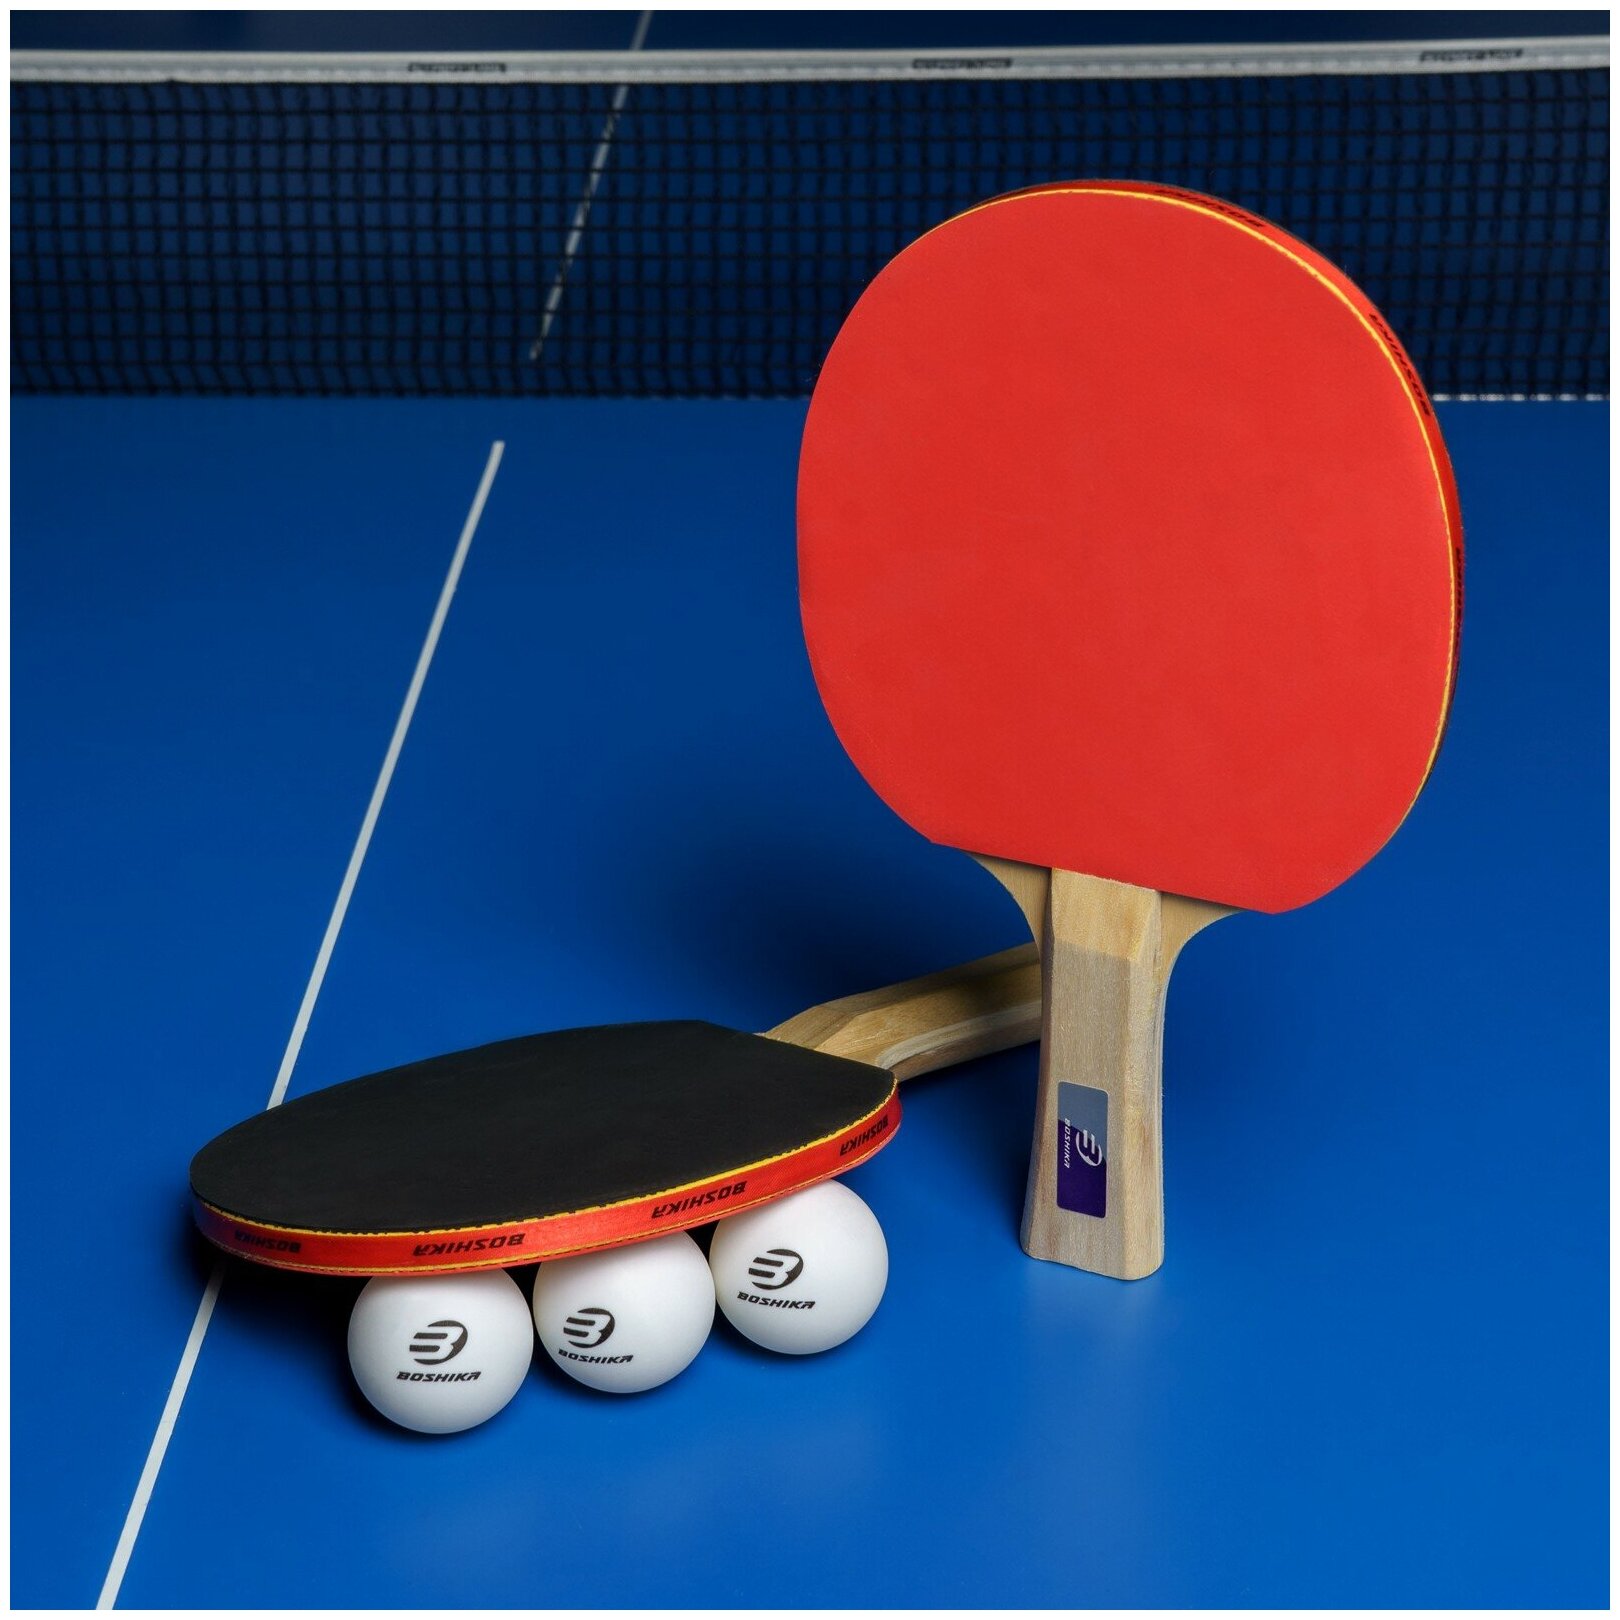 Набор для настольного тениса BOSHIKA "Control 10", 2 ракетки,3 мяча, накладка 1,5 мм, коническая ручка, цвет красный, черный